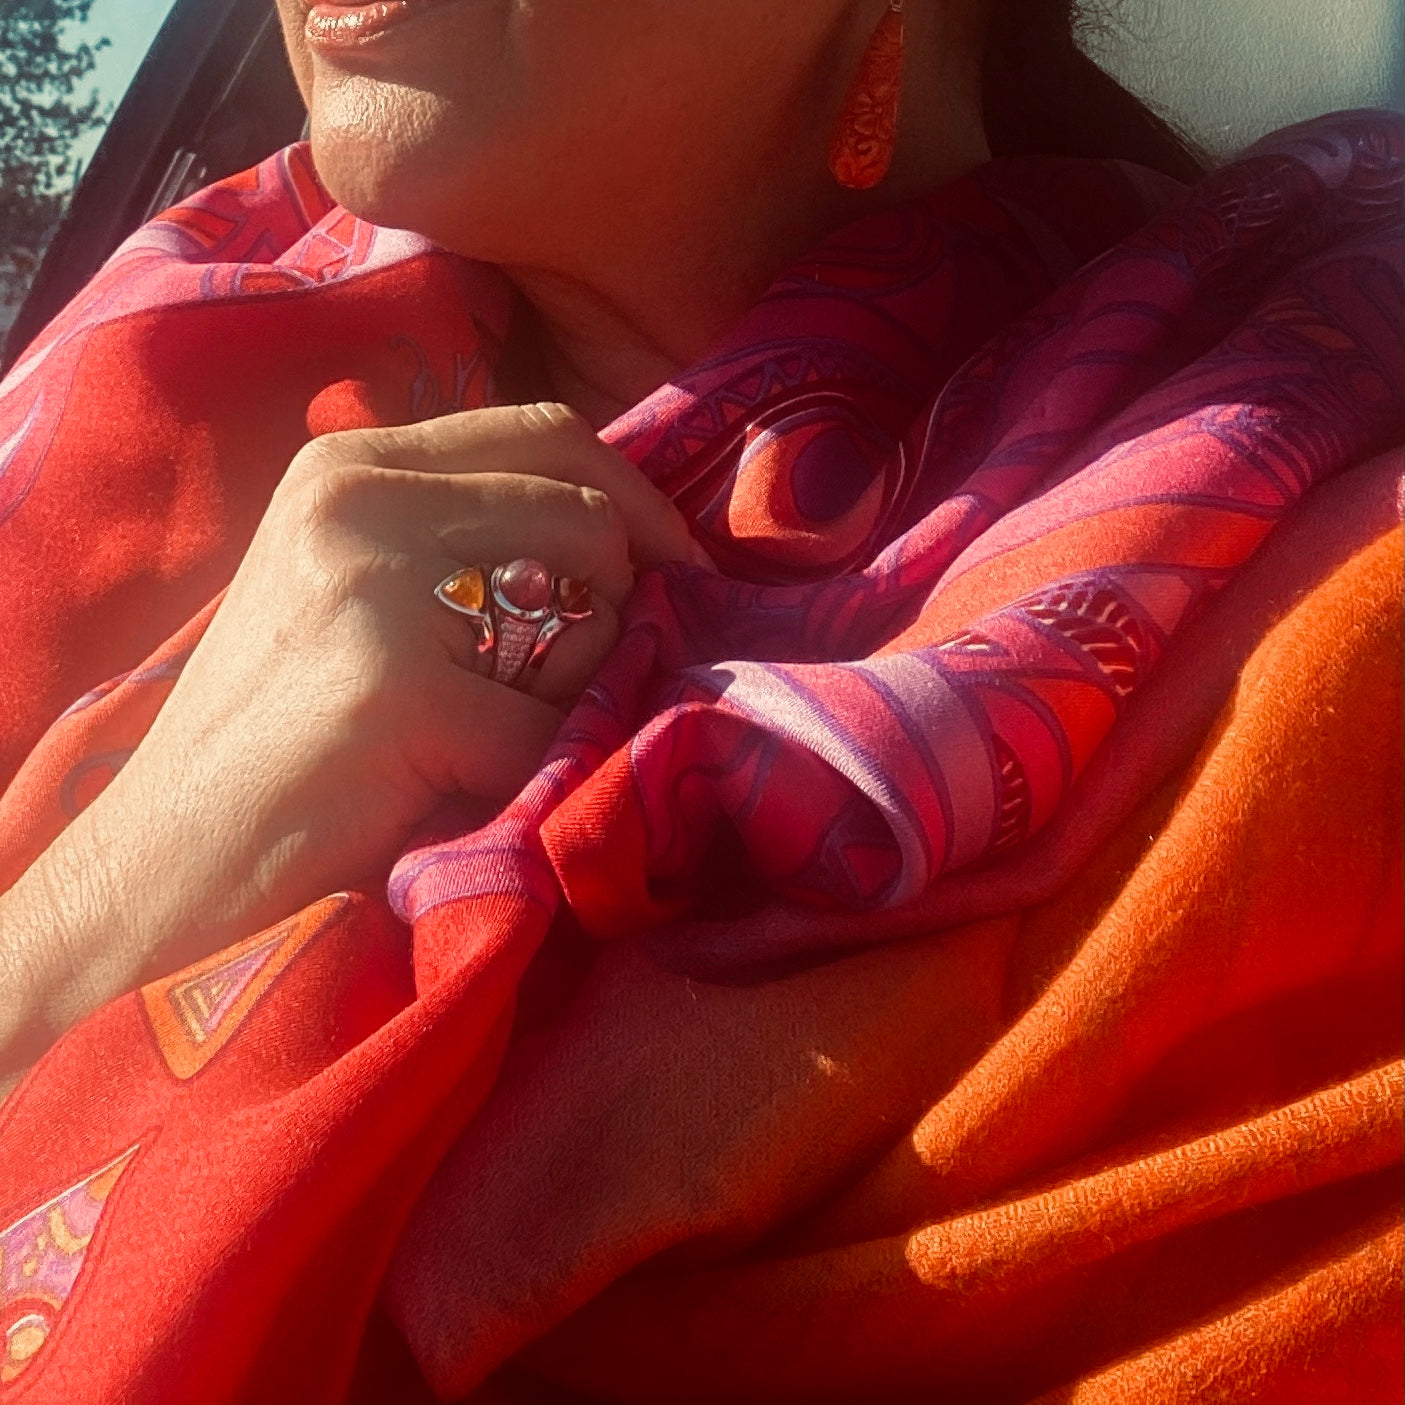 "WILD LIFE" Kaschmir/Seide Tuch 150x150  - 100% feinstes Kaschmir & Rückseite  hochwertige Twill Seide Limited Edition #3 von 3 - Handgefertigt - Doubleface - auf Seidentwill bedrucktes Motiv - Rot Orange Pink